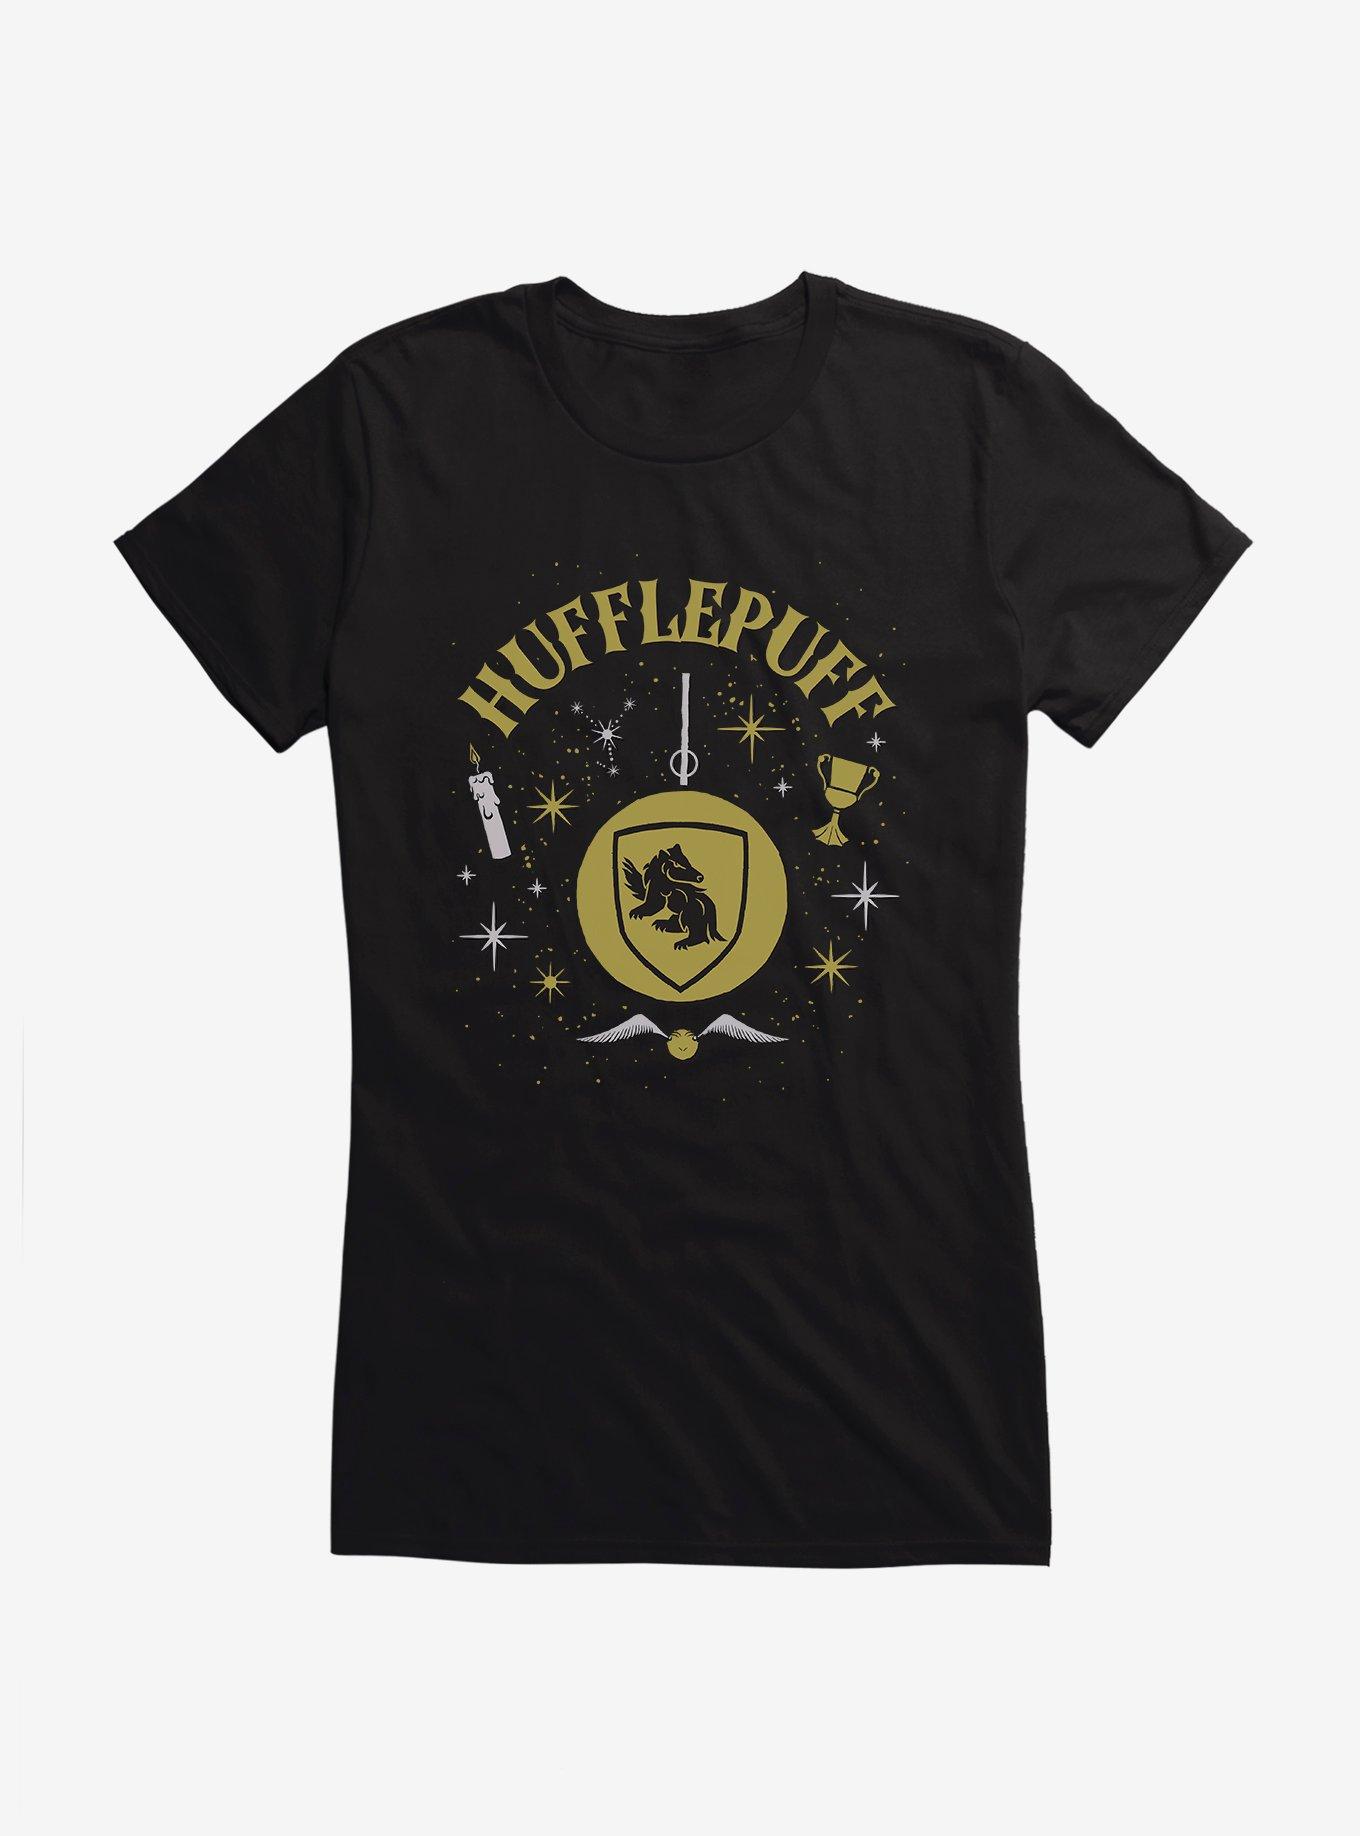 Harry Potter Hufflepuff Ornament Girls T-Shirt